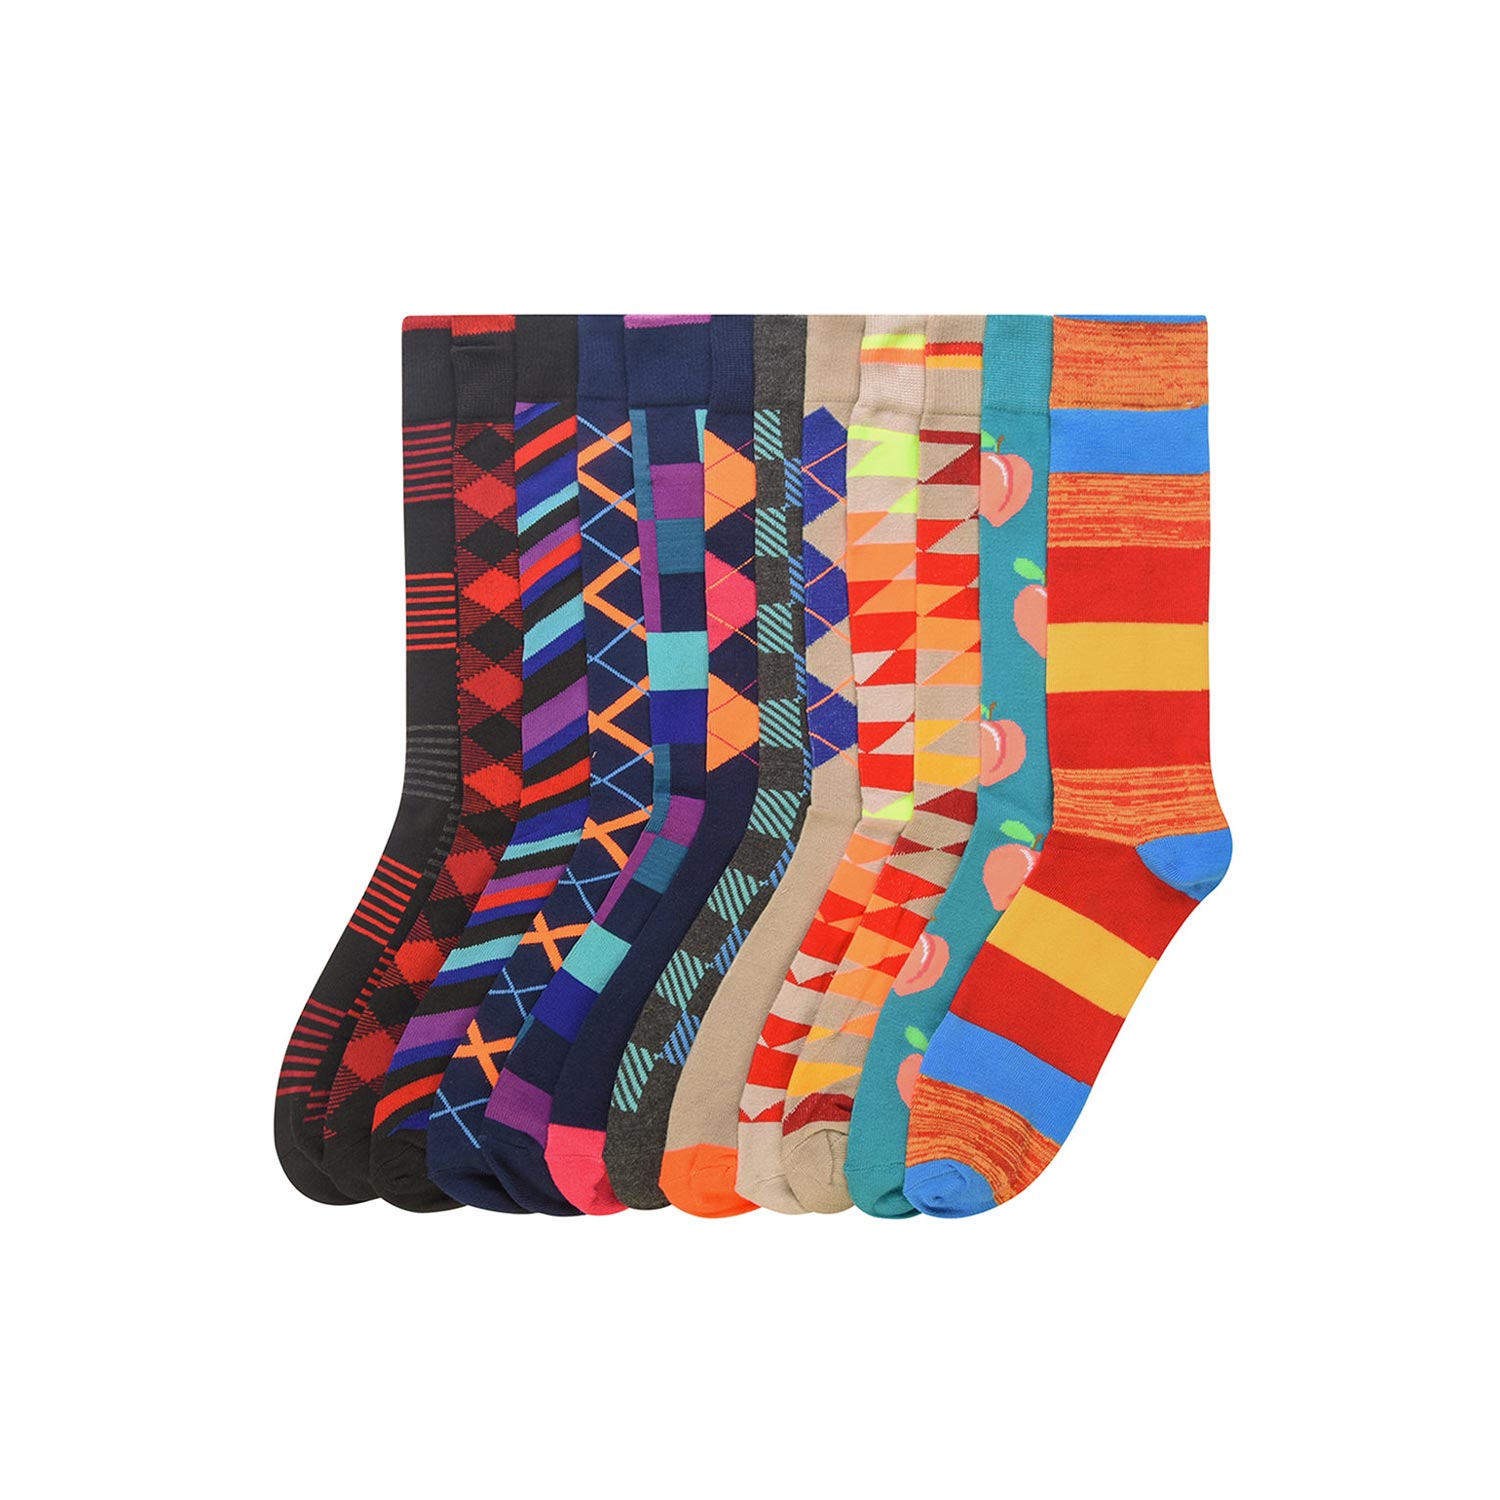  Fun Styled Socks - 12 Pack 